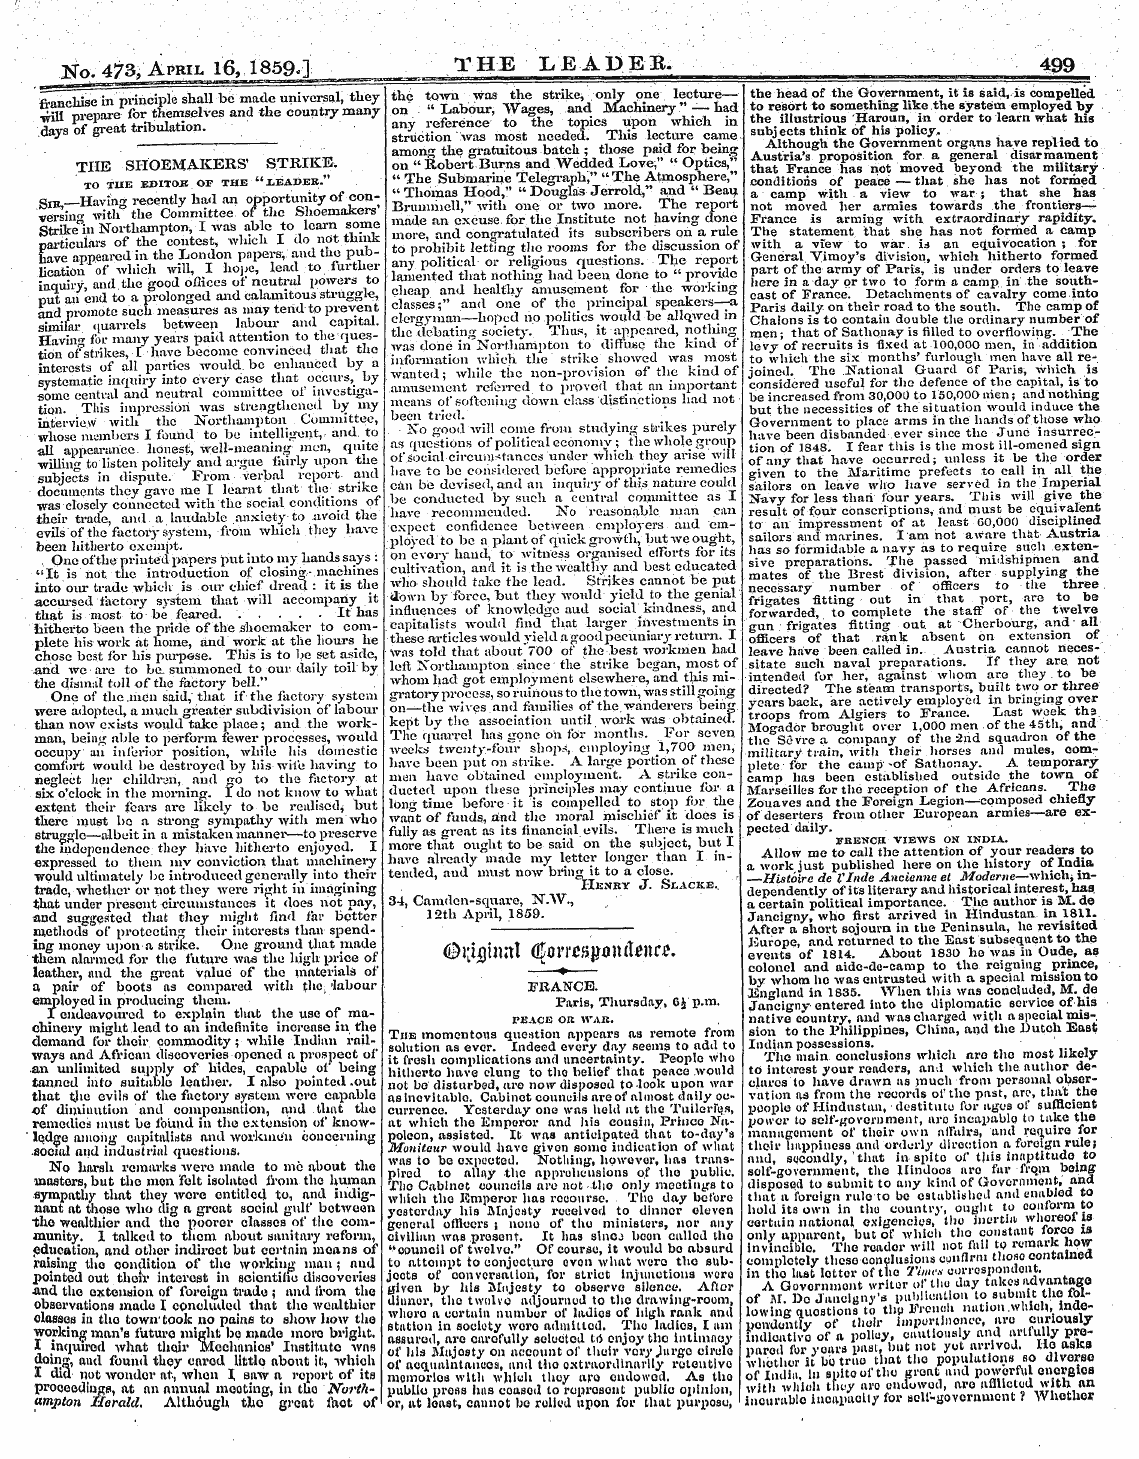 Leader (1850-1860): jS F Y, 2nd edition - /Linimntmyt /Tfrtim.Rt£Mvrtnrtimi*Rt U^I^Jyiiliu Ll;«I J Tjj^Yiluijut,